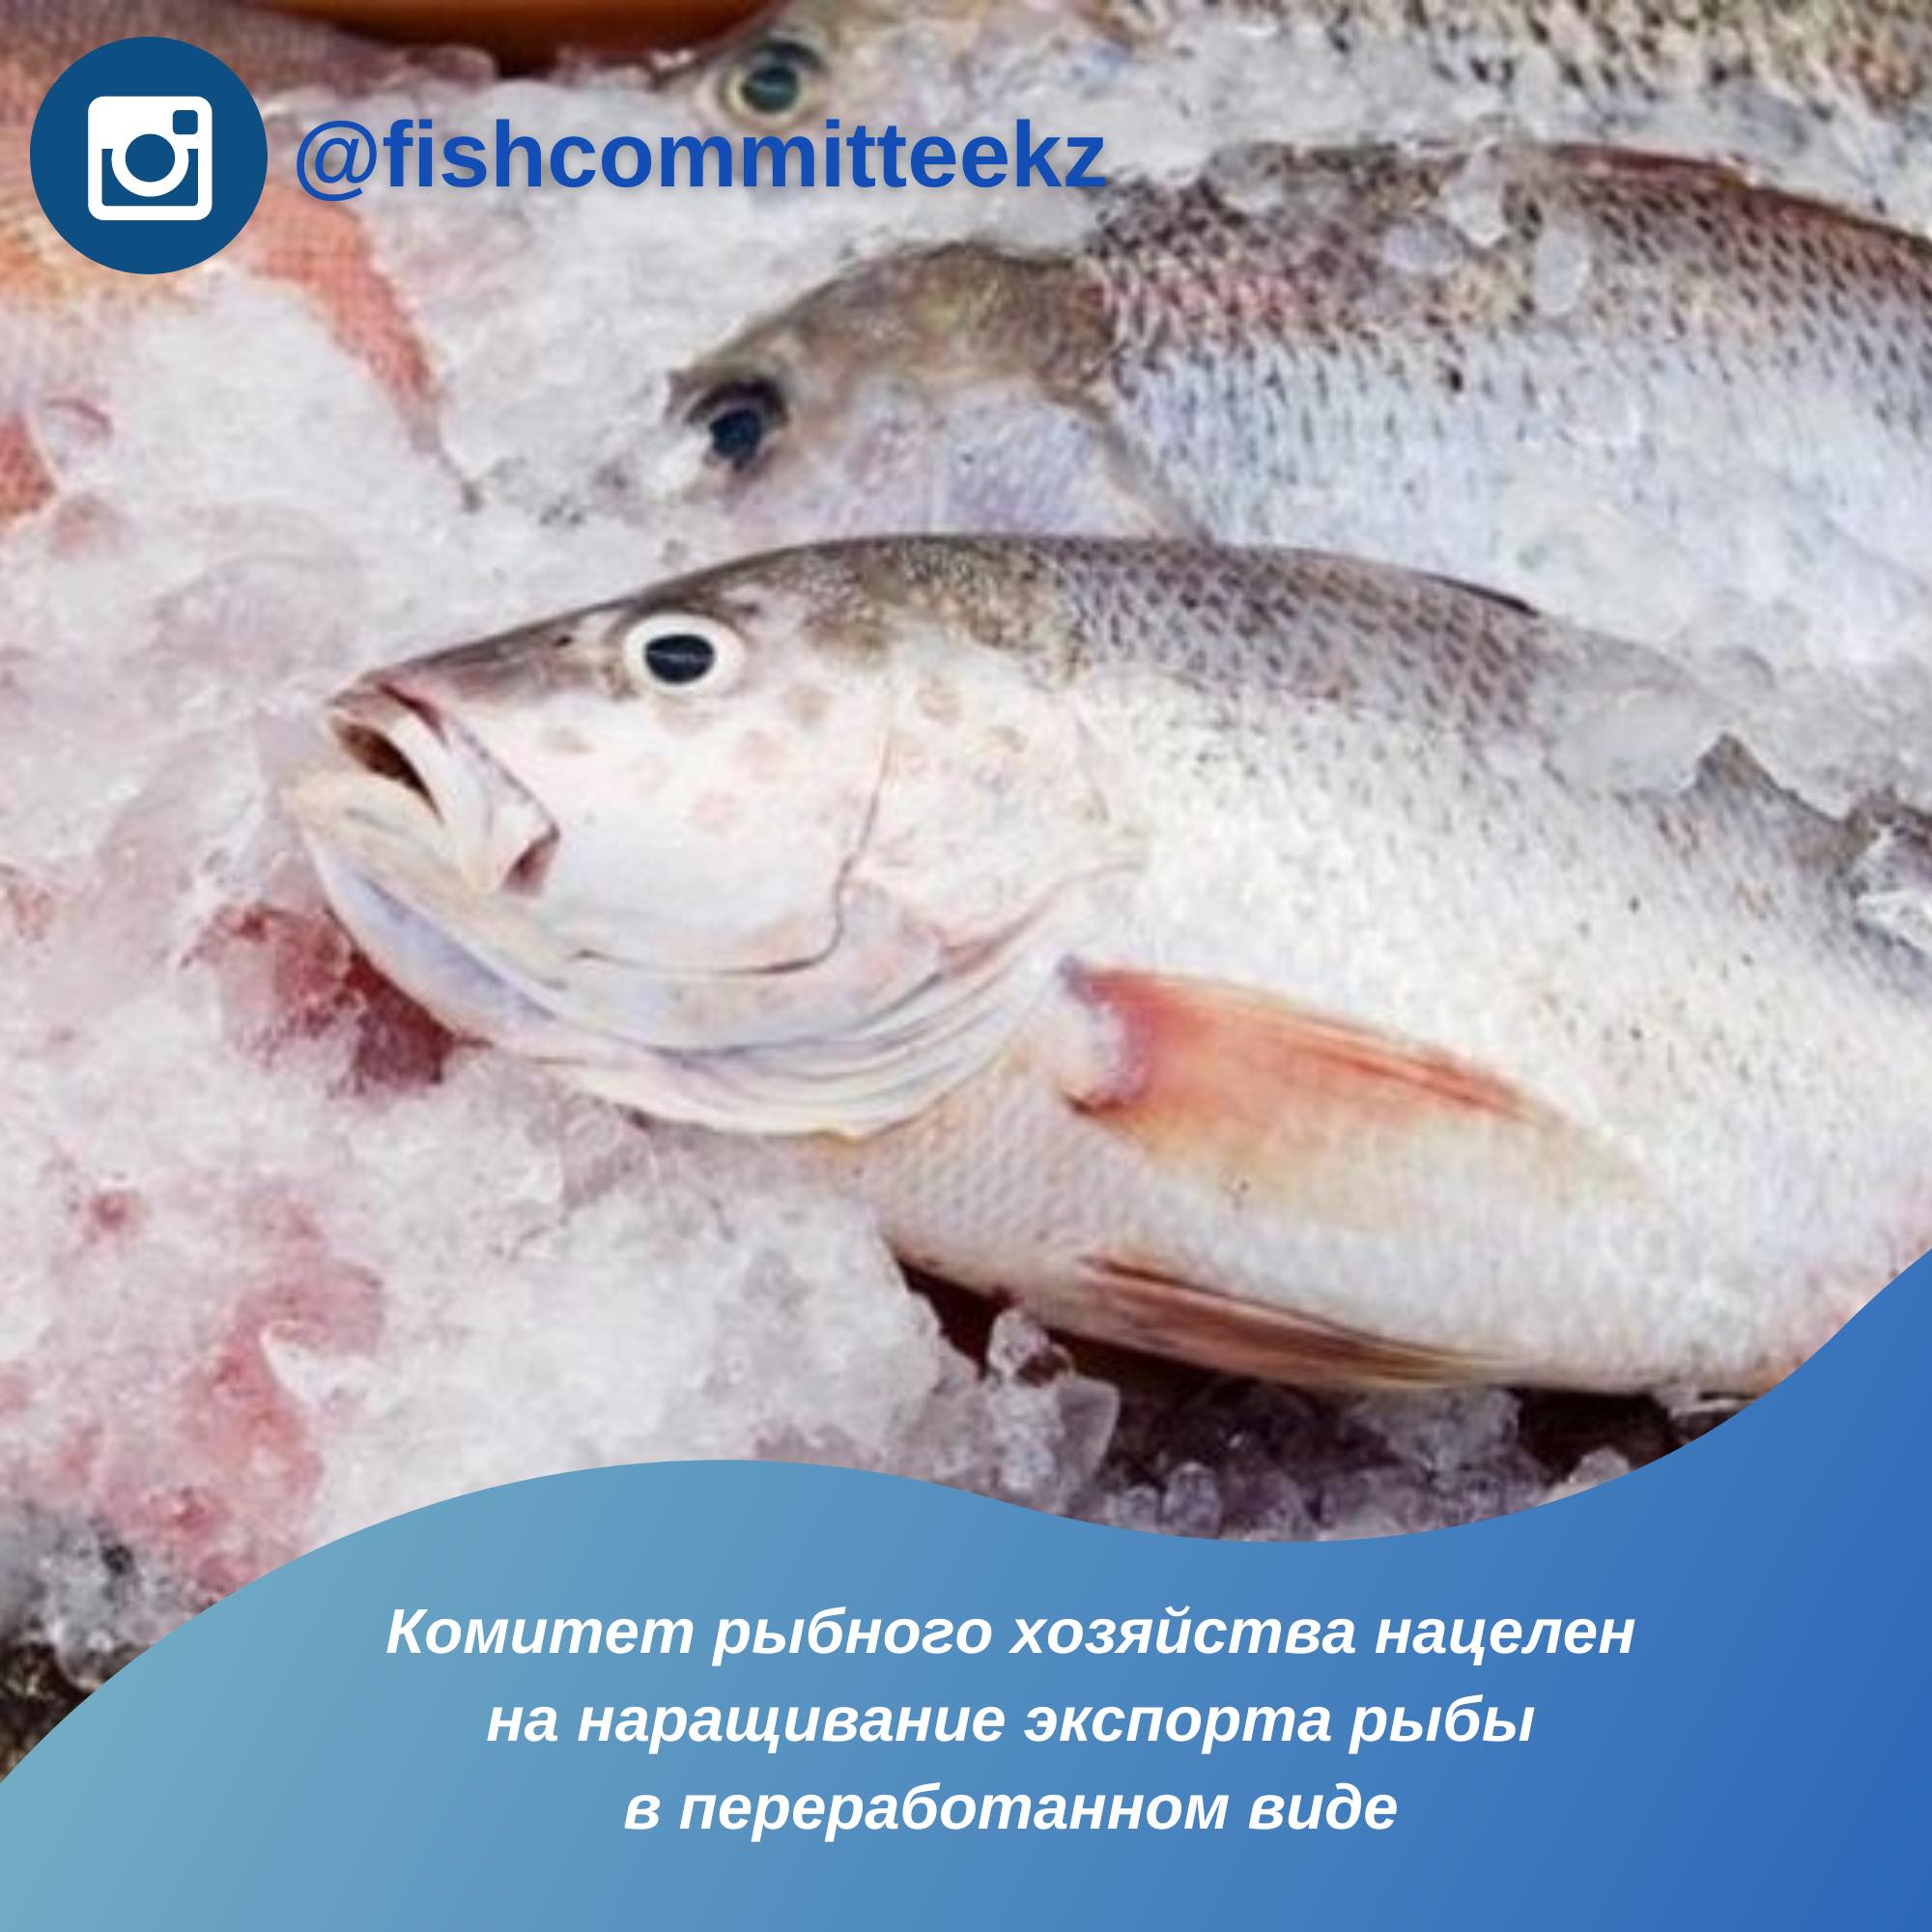 Комитет рыбного хозяйства нацелен на наращивание экспорта рыбы в переработанном виде